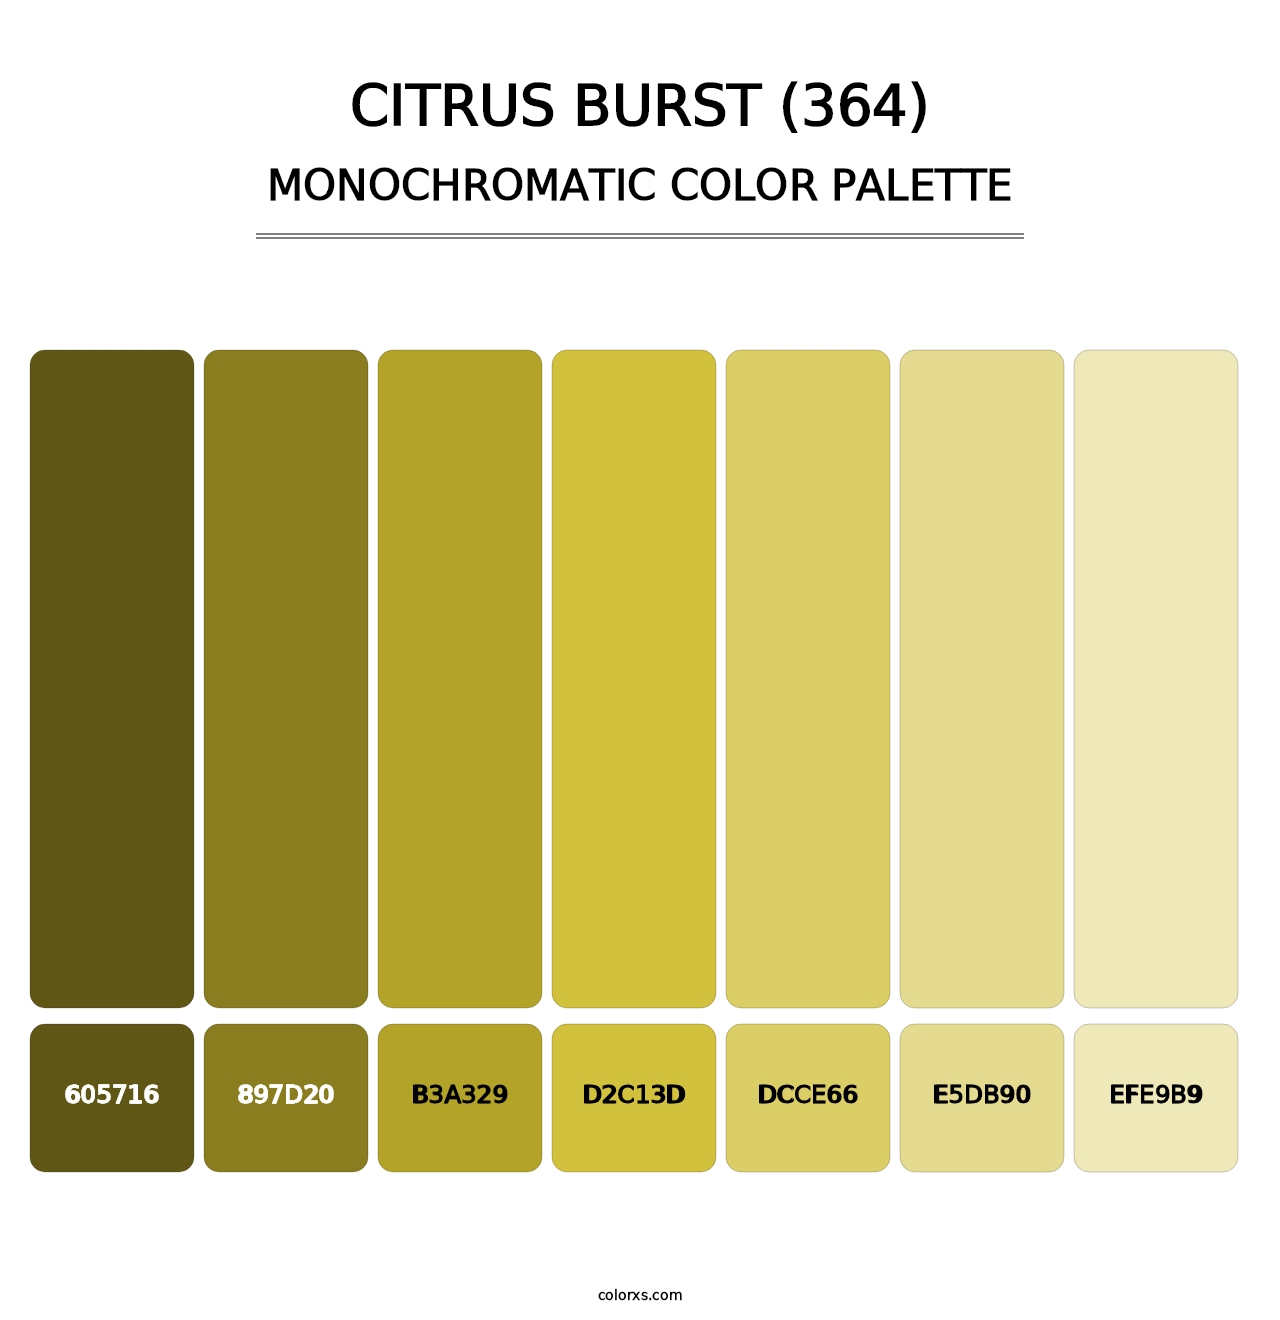 Citrus Burst (364) - Monochromatic Color Palette